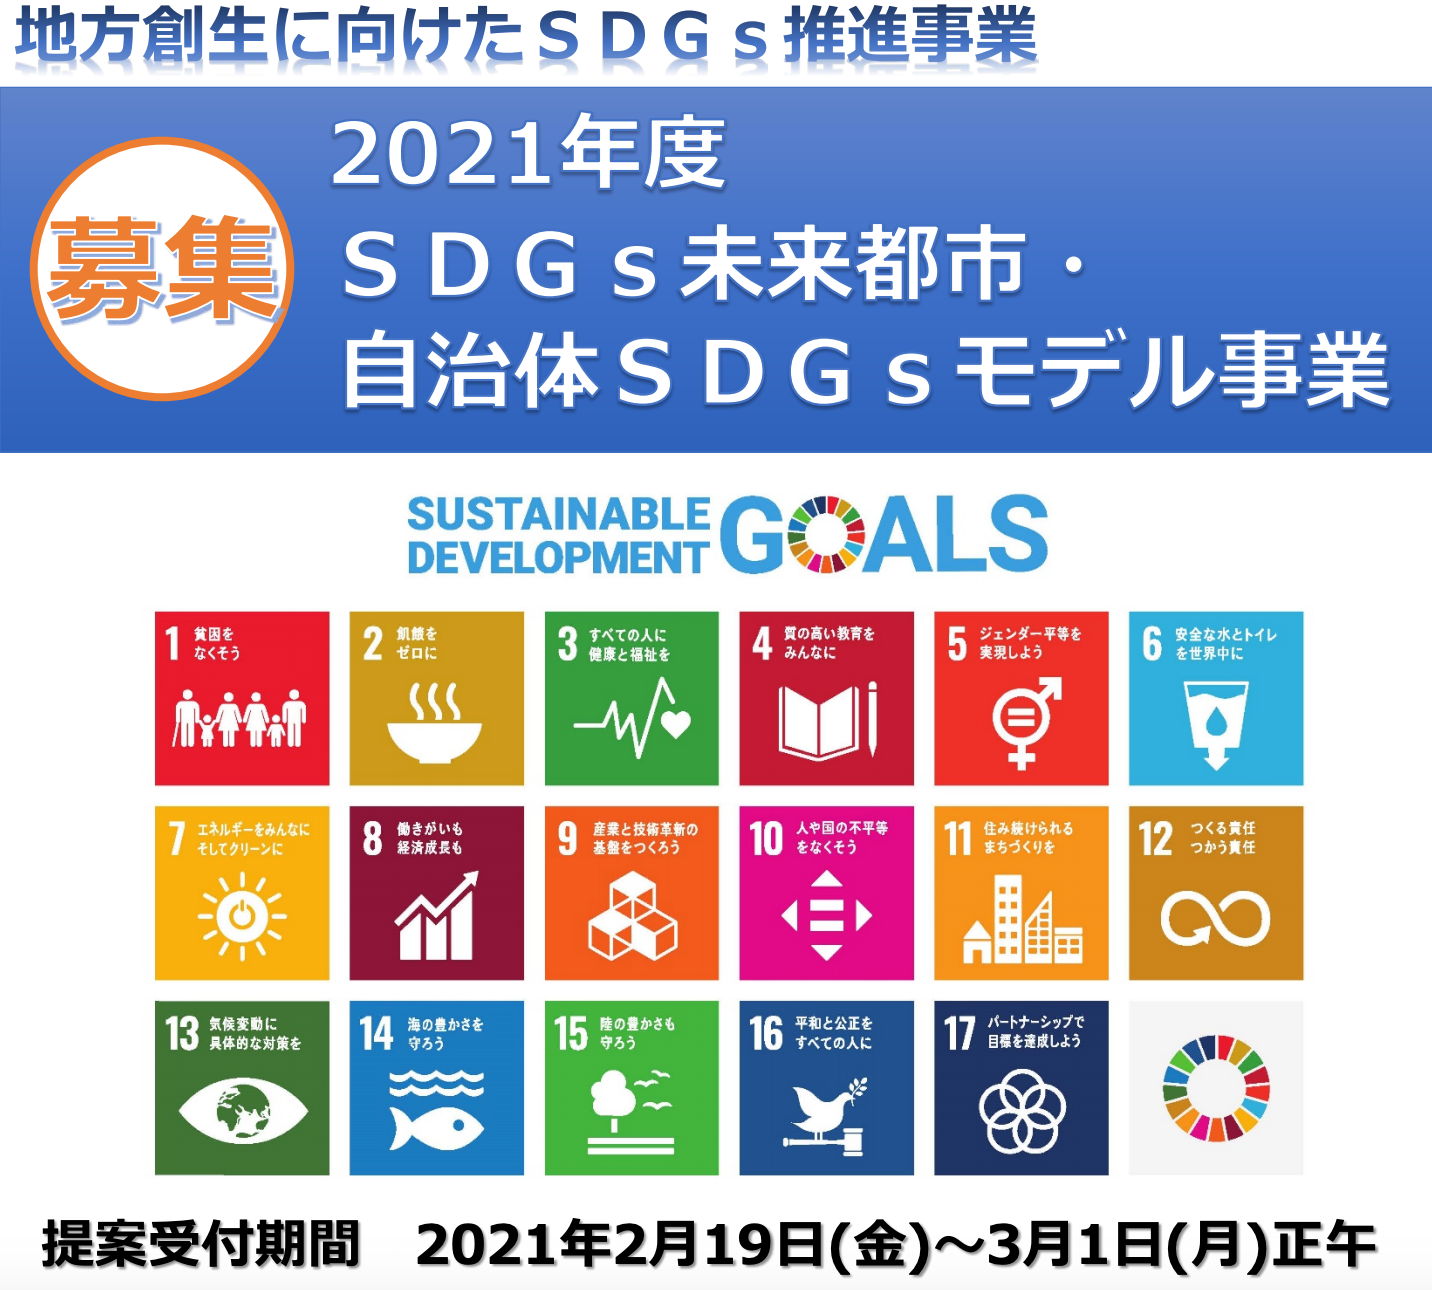 SDGs未来都市募集開始!